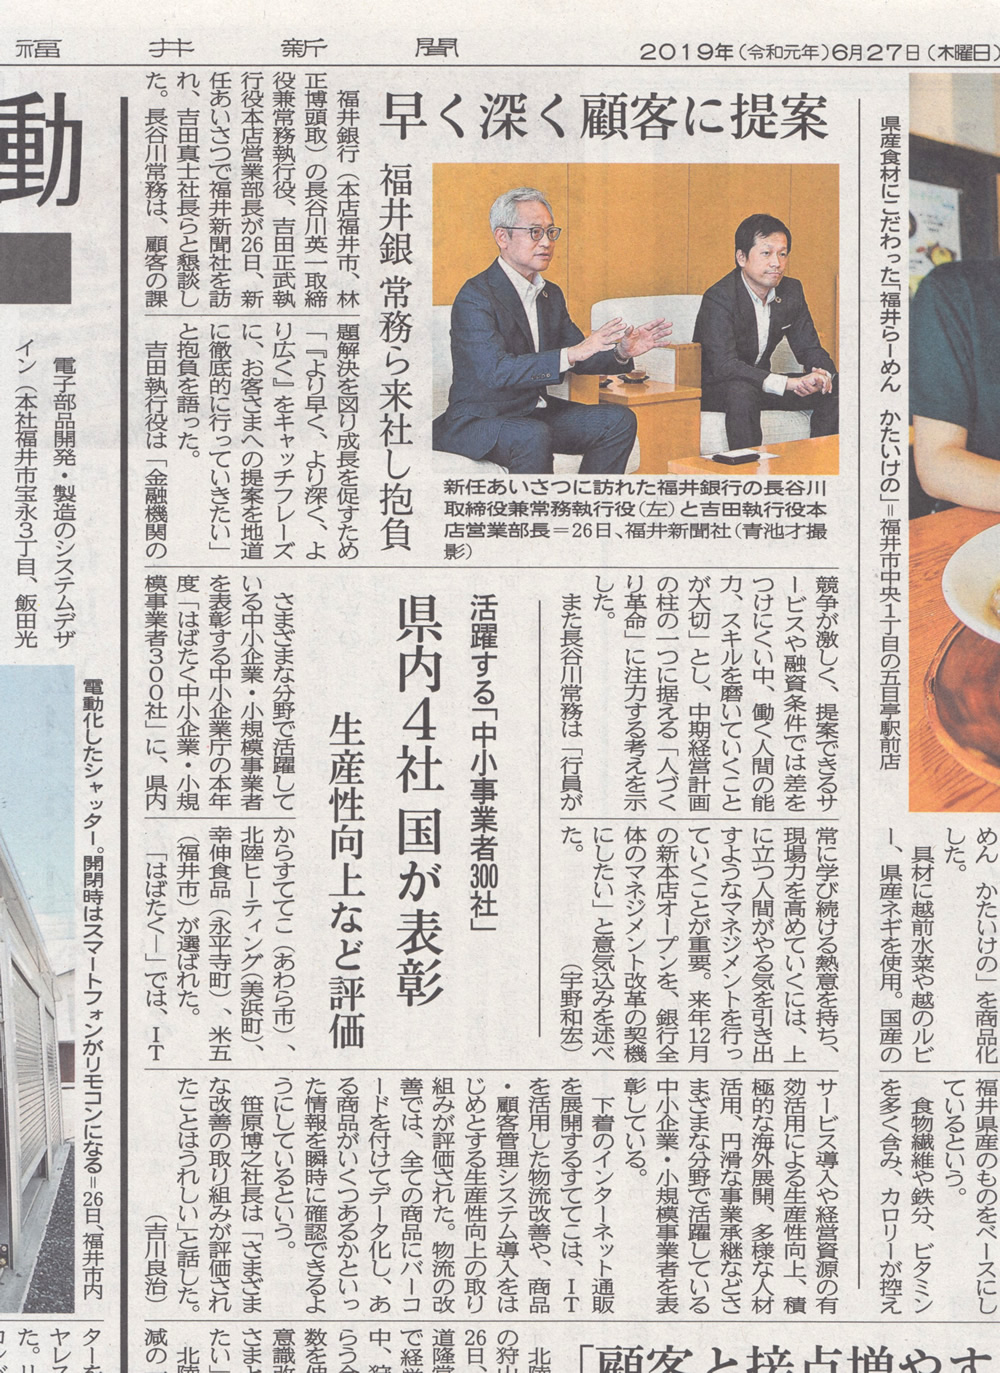 福井新聞に「はばたく中小企業300社」として表彰されたことを掲載していただきました